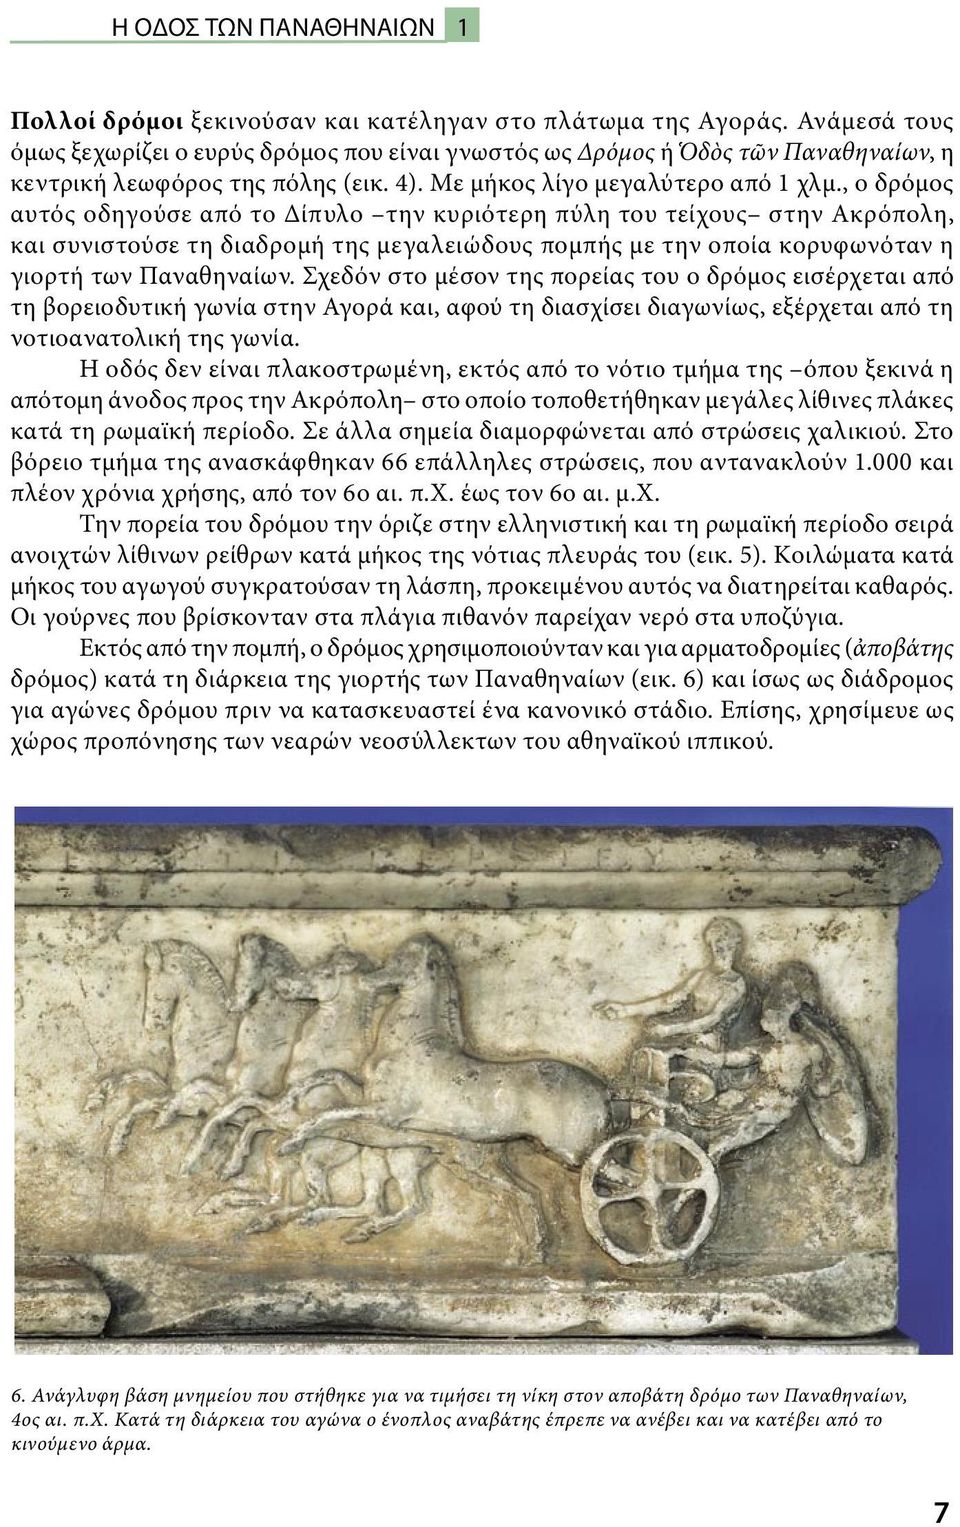 , ο δρόμος αυτός οδηγούσε από το Δίπυλο την κυριότερη πύλη του τείχους στην Ακρόπολη, και συνιστούσε τη διαδρομή της μεγαλειώδους πομπής με την οποία κορυφωνόταν η γιορτή των Παναθηναίων.